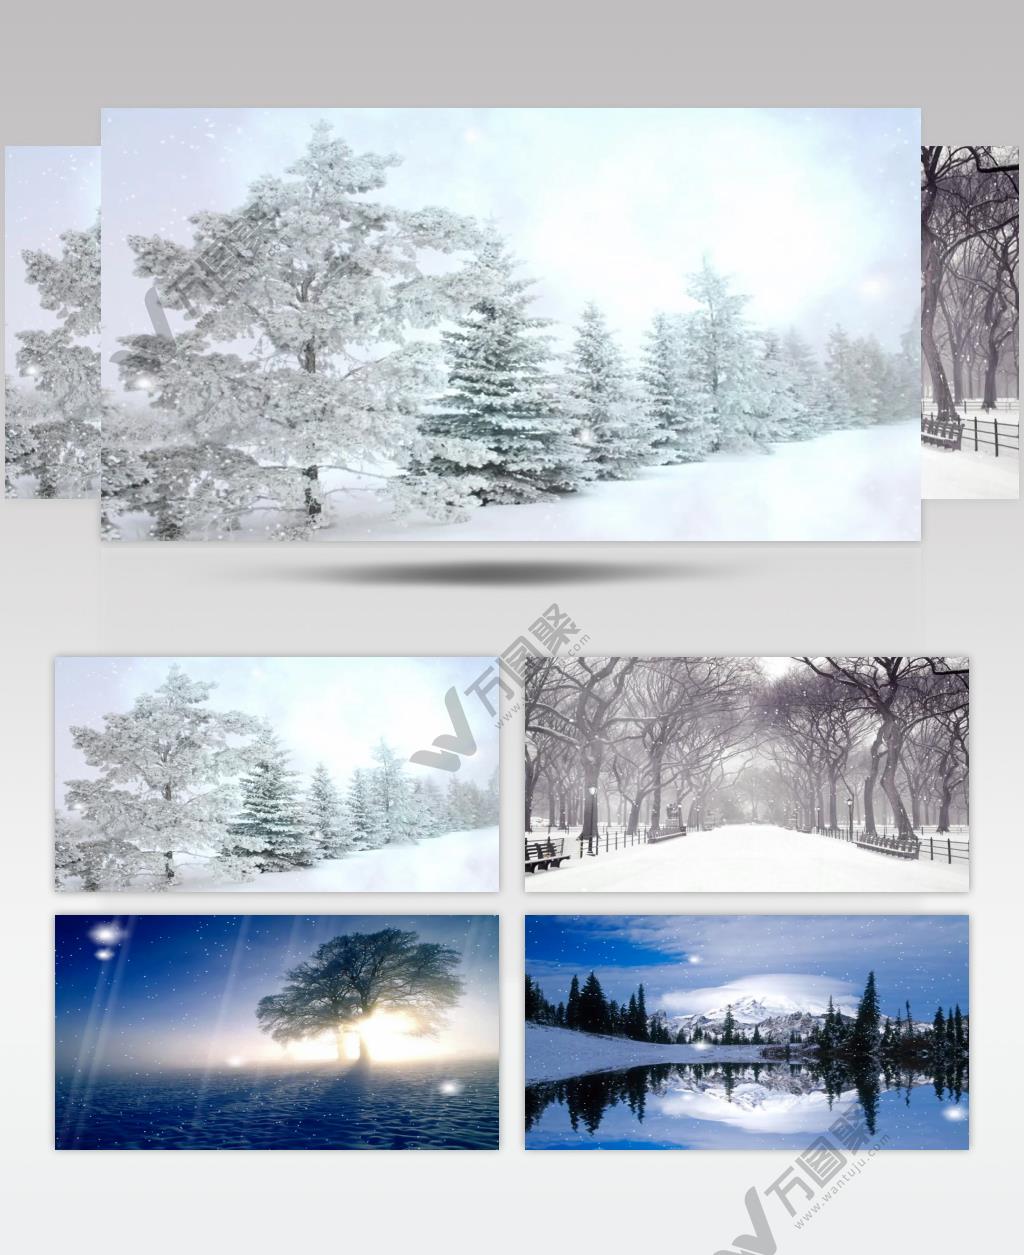 A100-冬天雪地雪景飘雪森林(有音乐) 视频动态背景 虚拟背景视频